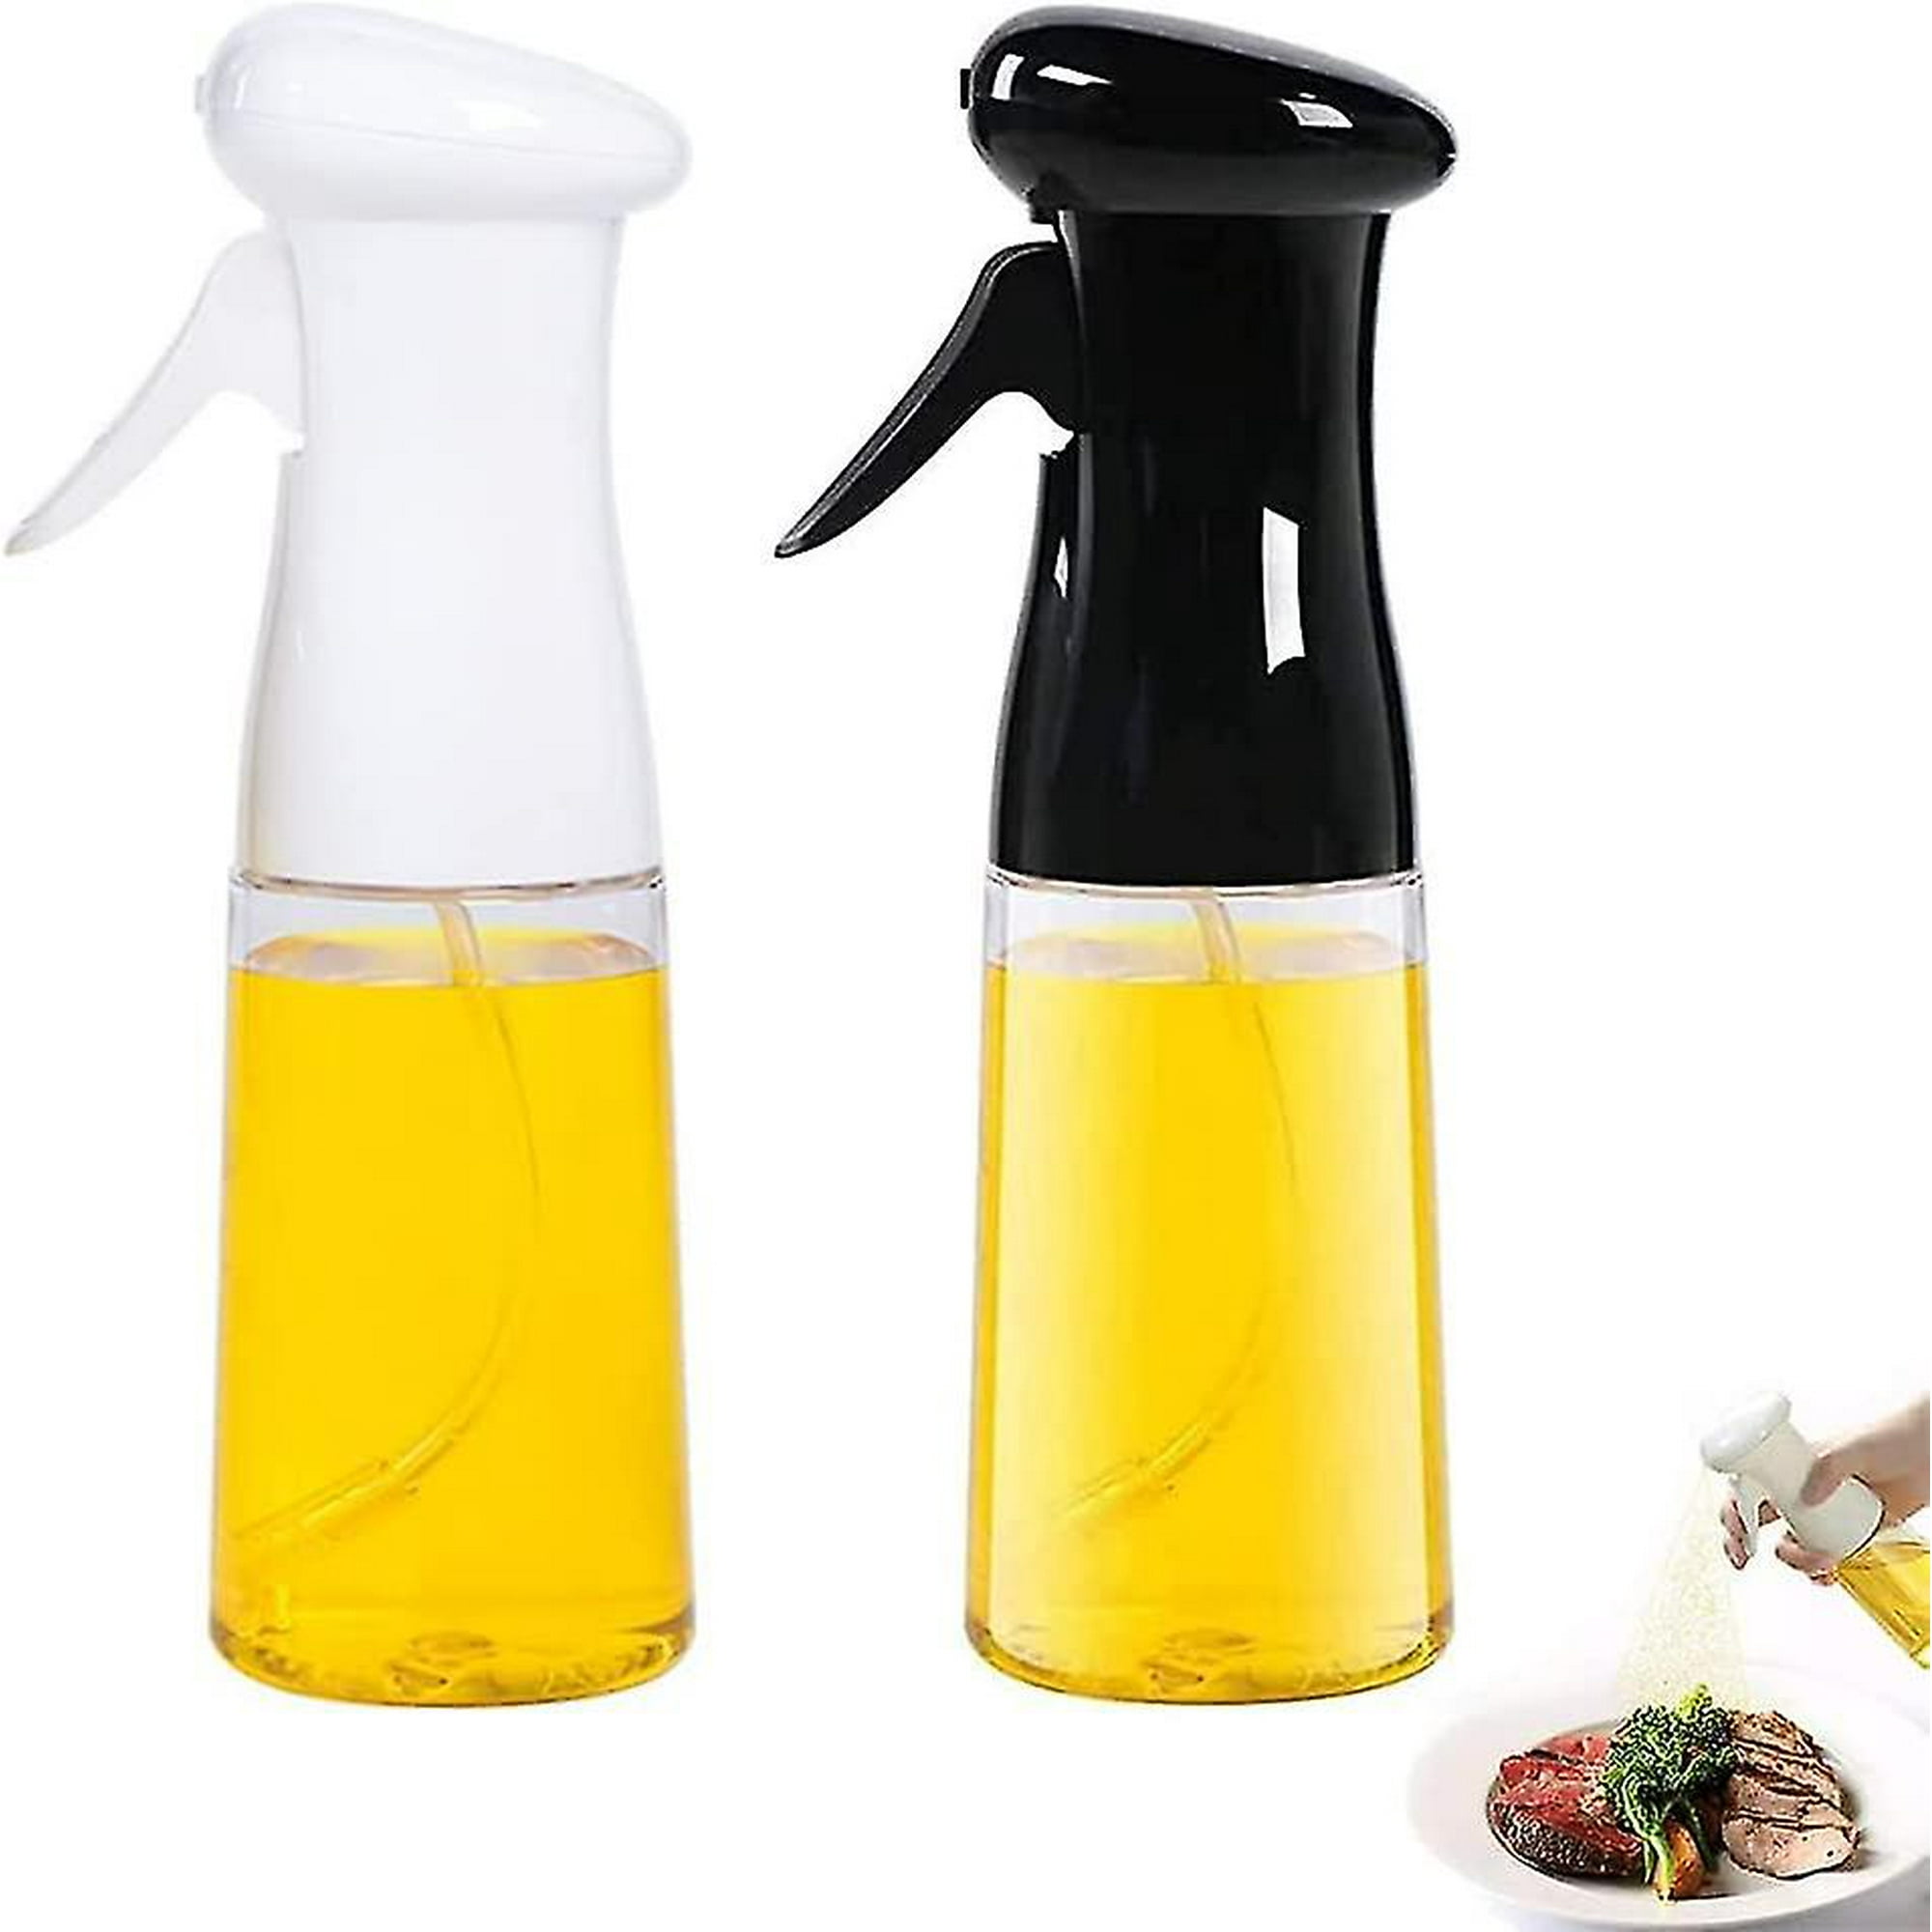 2 uds botella de Spray para cocinar, dispensador de aceite de oliva para  cocinar, pulverizador de aceite de oliva para cocinar, botella de Spray para  cocinar para barbacoa, cocinar a la parrilla